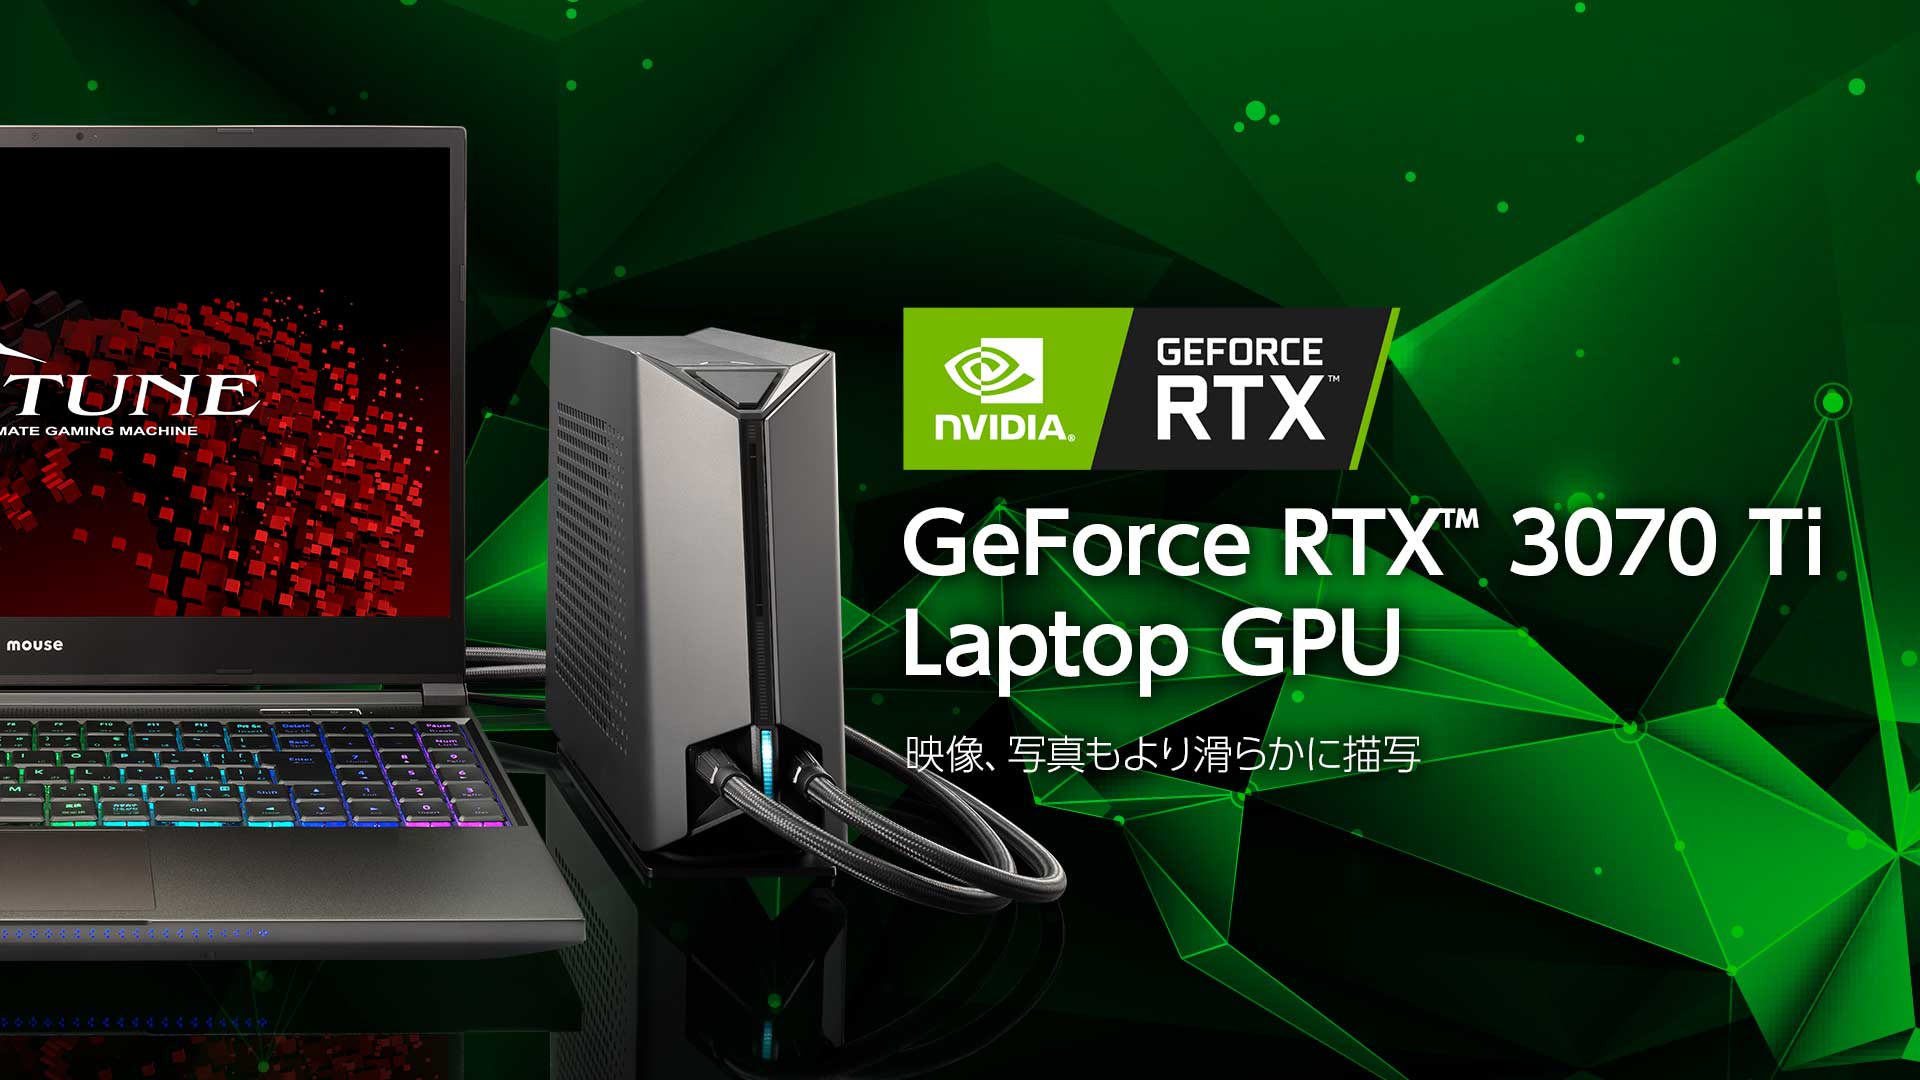 GeForce RTX 3070 Ti Laptop GPU